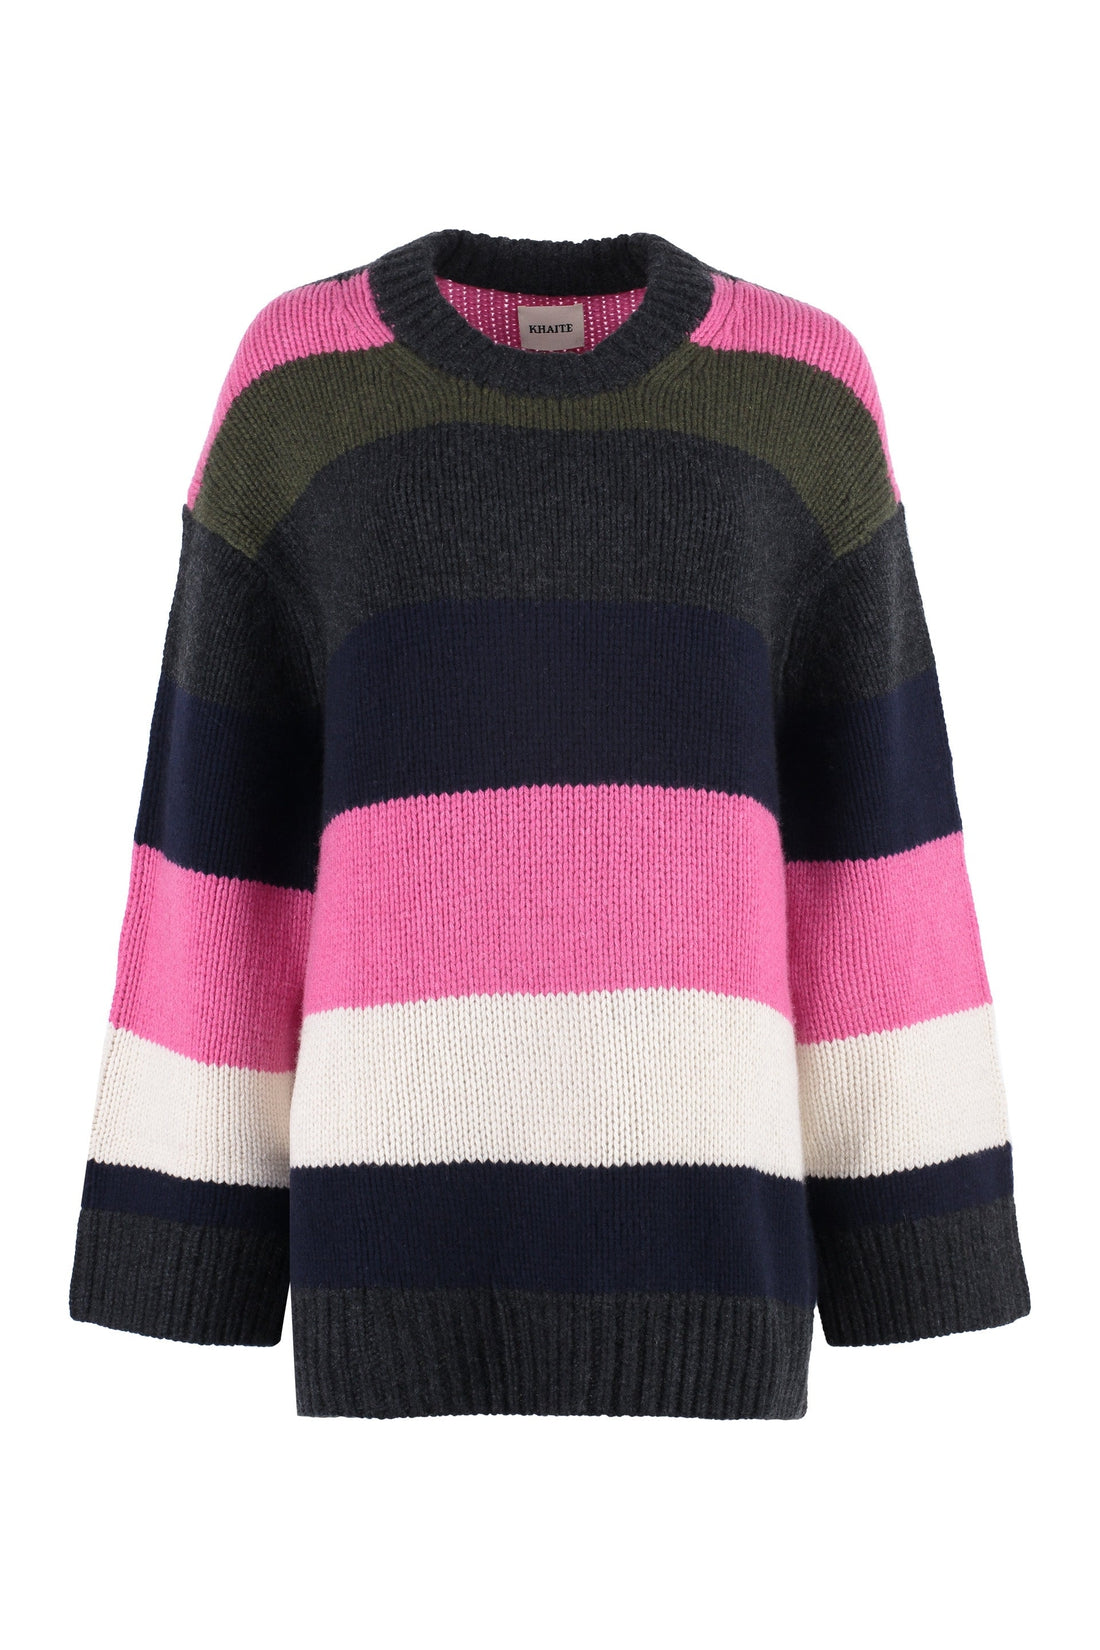 Khaite-OUTLET-SALE-Crew-neck cashmere sweater-ARCHIVIST